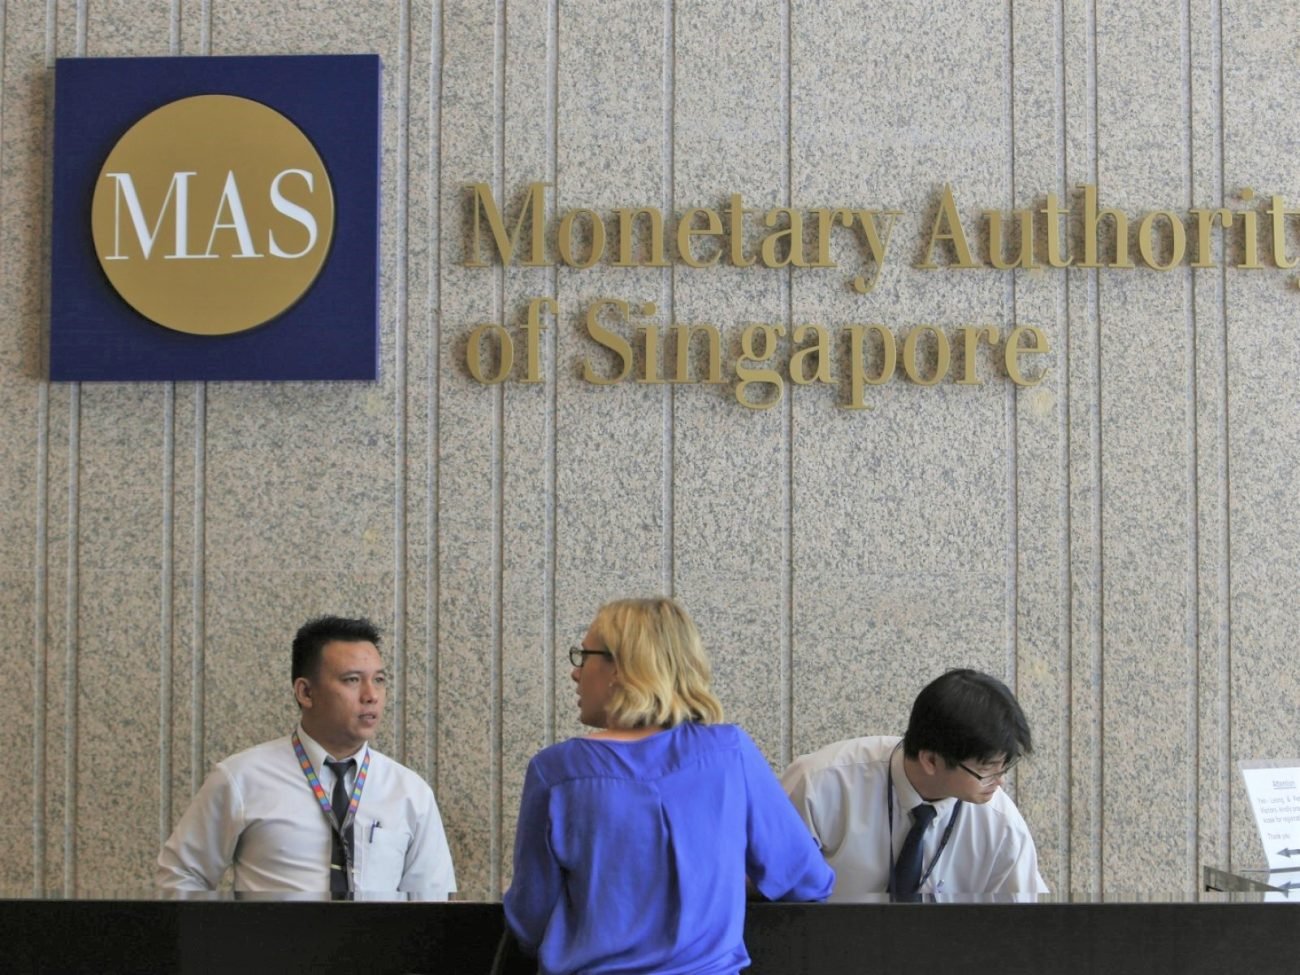 monetary authority singapore